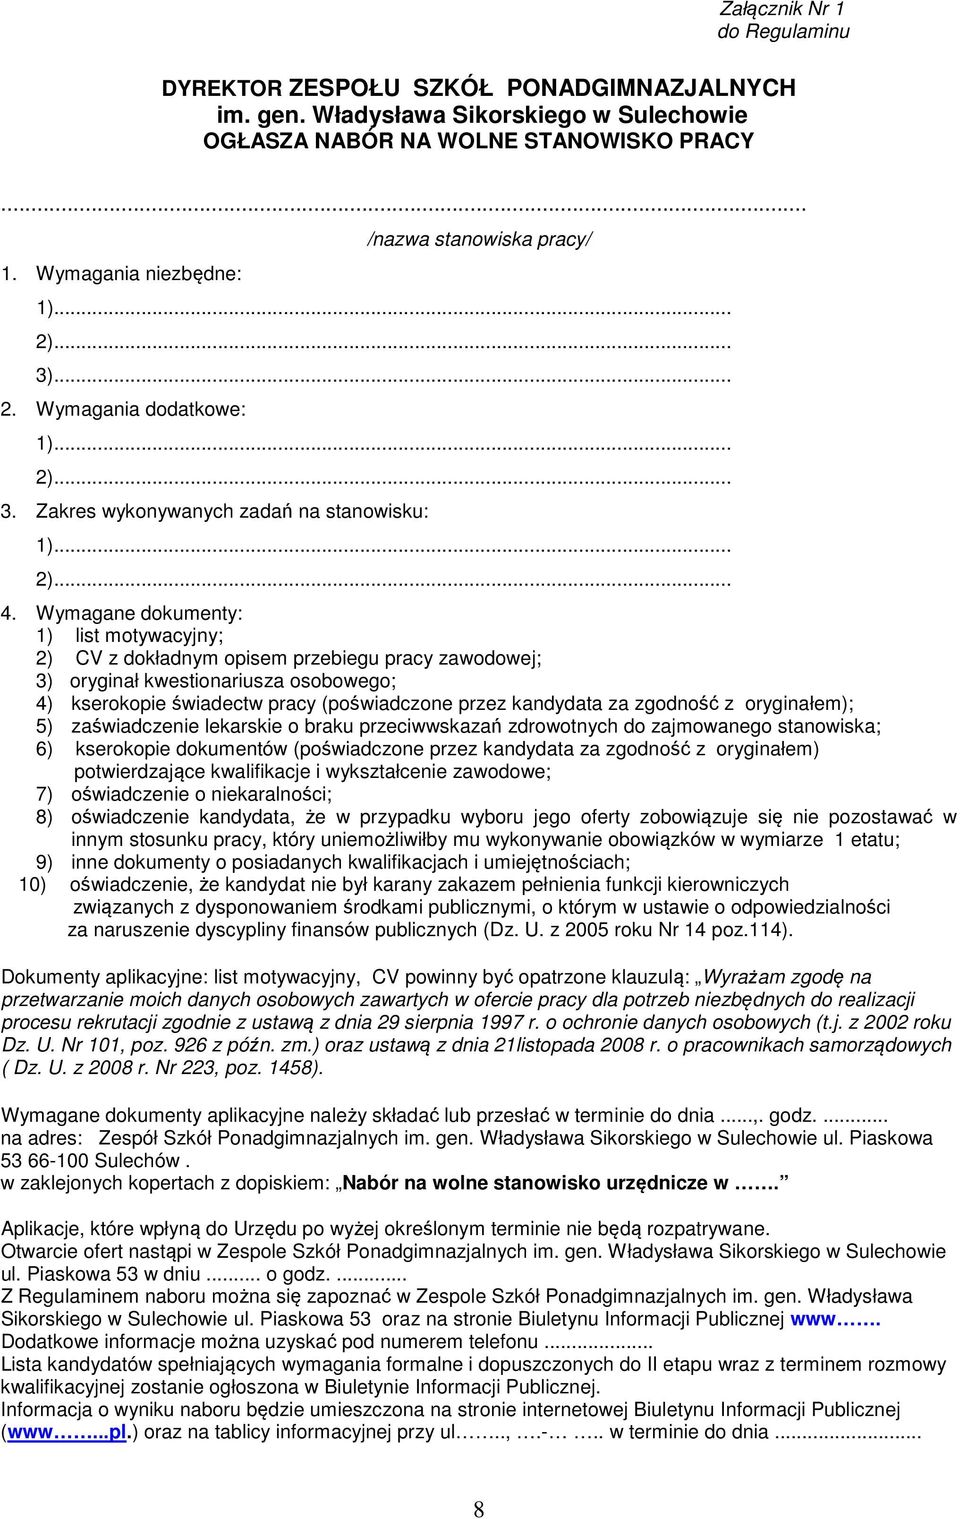 Wymagane dokumenty: 1) list motywacyjny; 2) CV z dokładnym opisem przebiegu pracy zawodowej; 3) oryginał kwestionariusza osobowego; 4) kserokopie świadectw pracy (poświadczone przez kandydata za